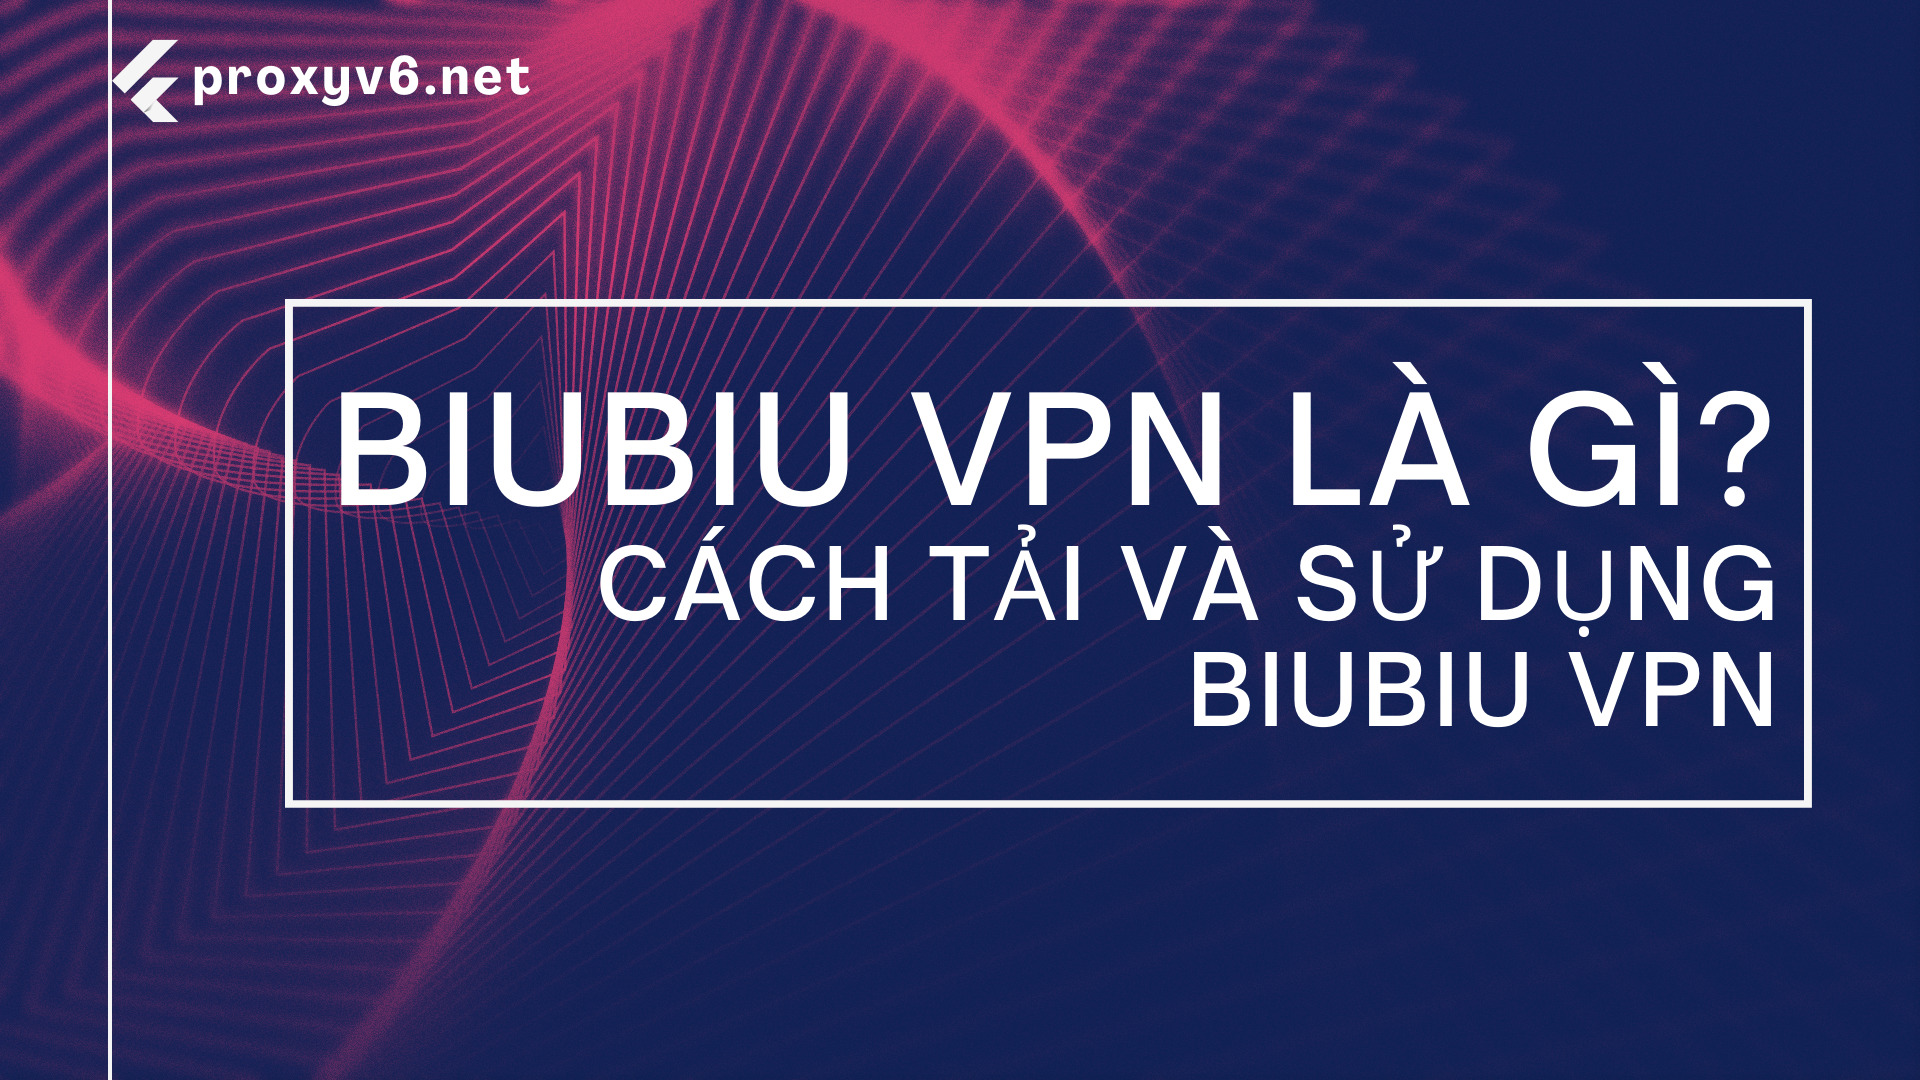 Biubiu VPN là gì? Cách tải và sử dụng Biubiu VPN